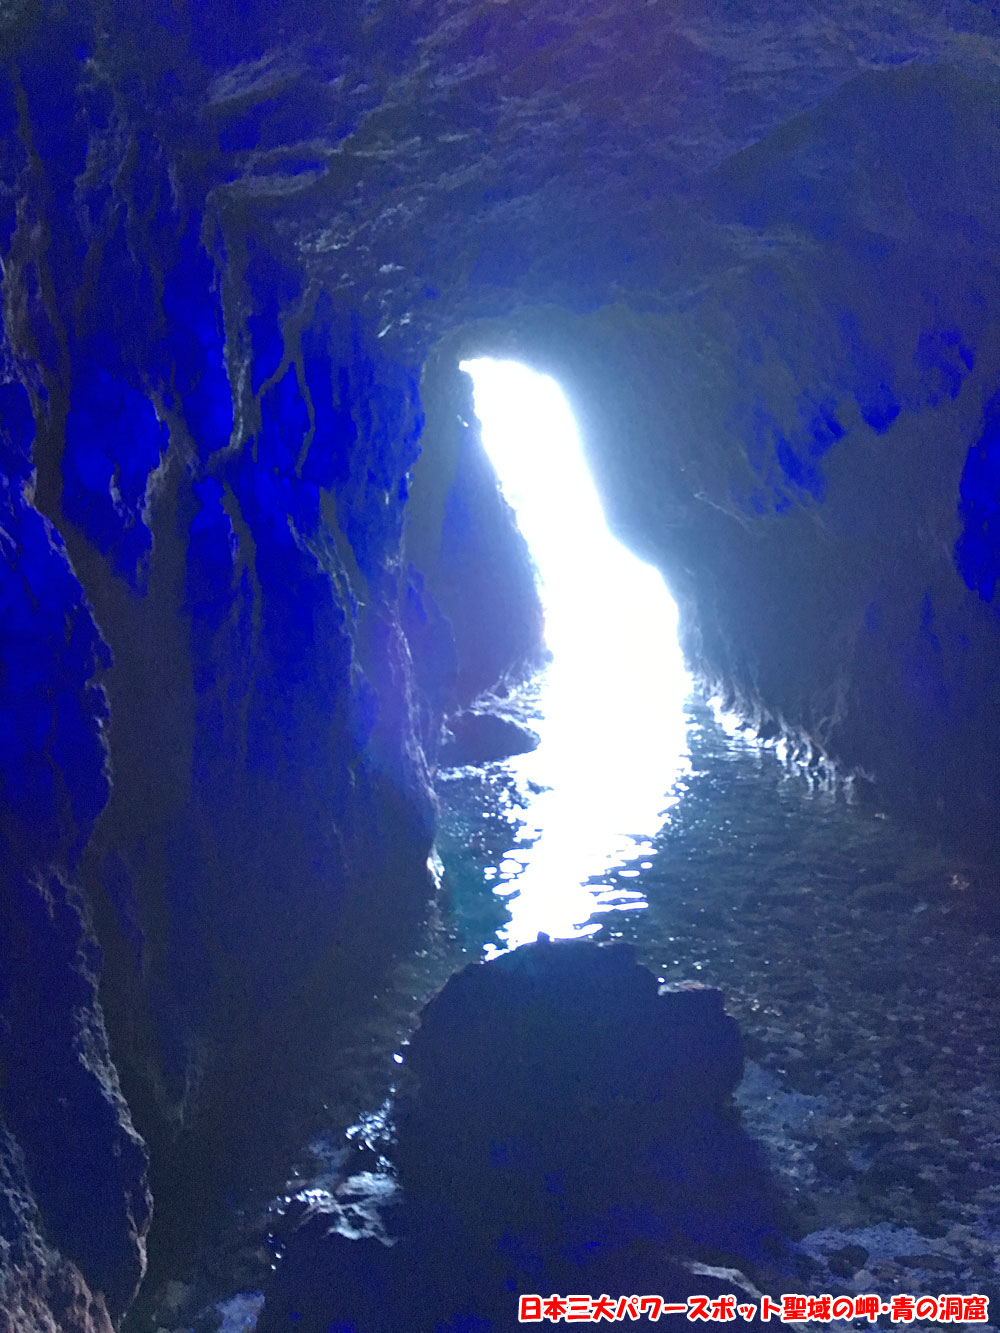 日本三大パワースポット聖域の岬・青の洞窟